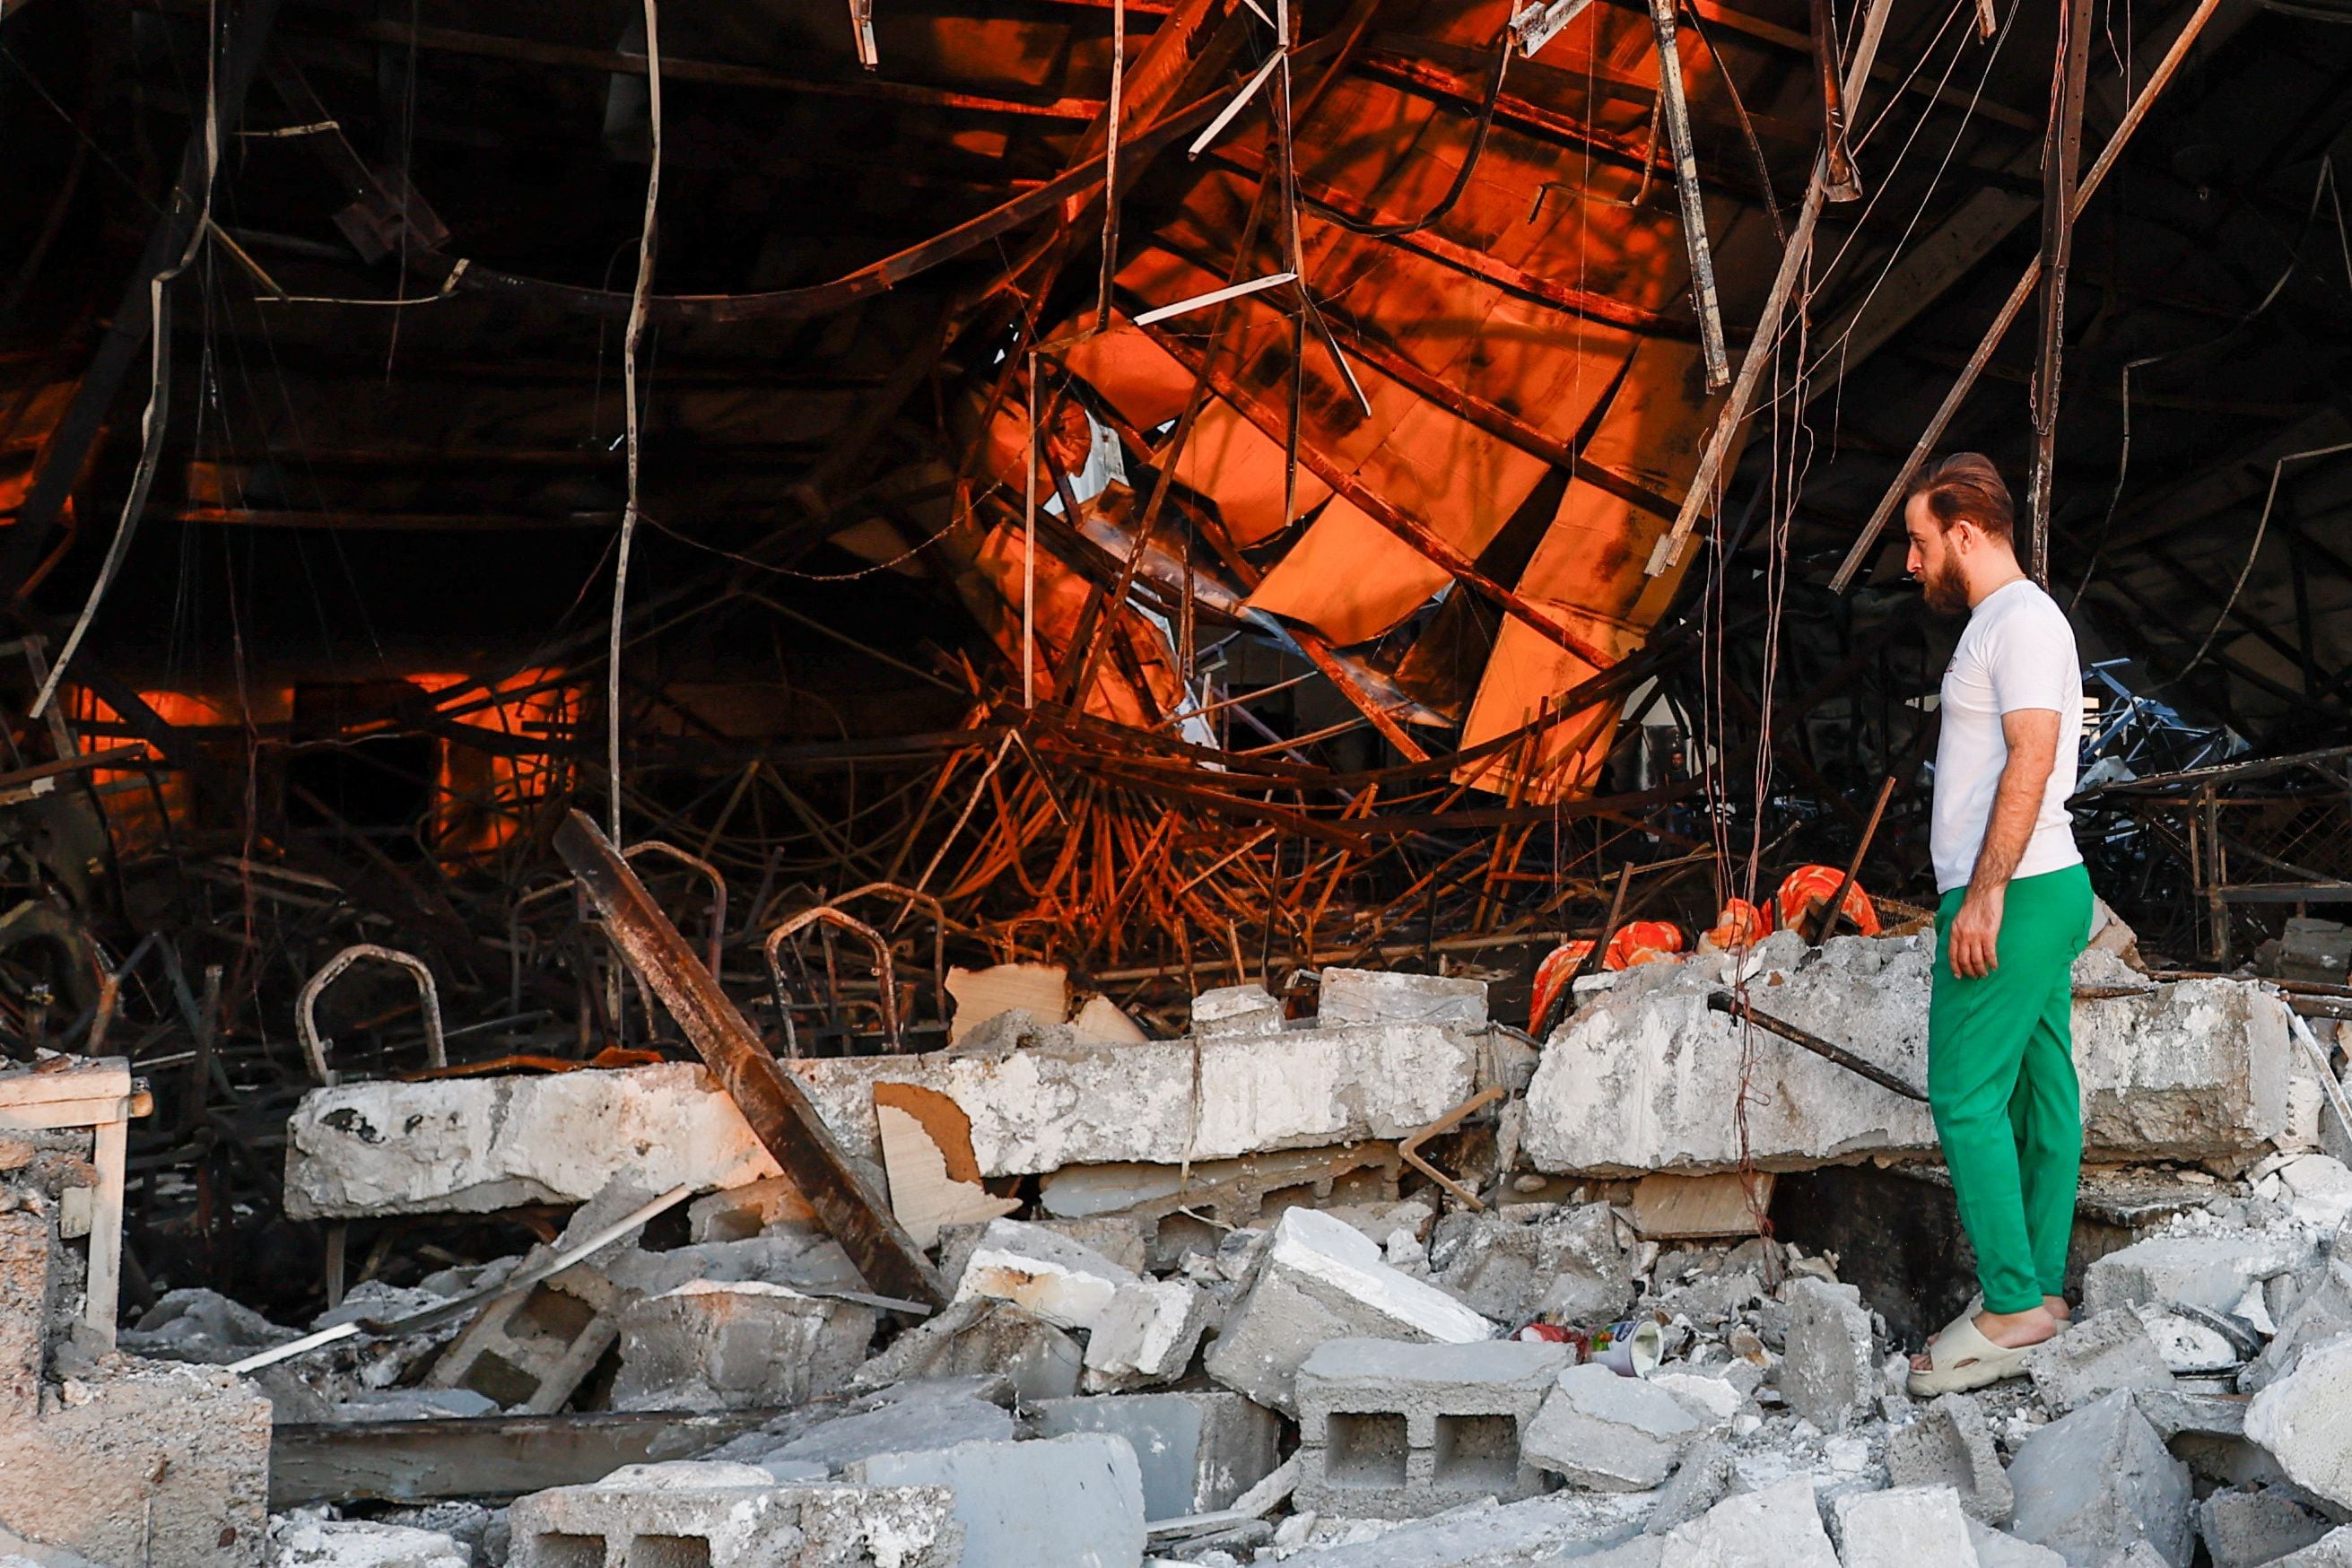 Una persona observa los daños en el lugar tras un incendio mortal en la celebración de una boda, en el distrito de Hamdaniya en la provincia iraquí de Nínive, Irak, 27 de septiembre de 2023. REUTERS/Khalid Al-Mousily